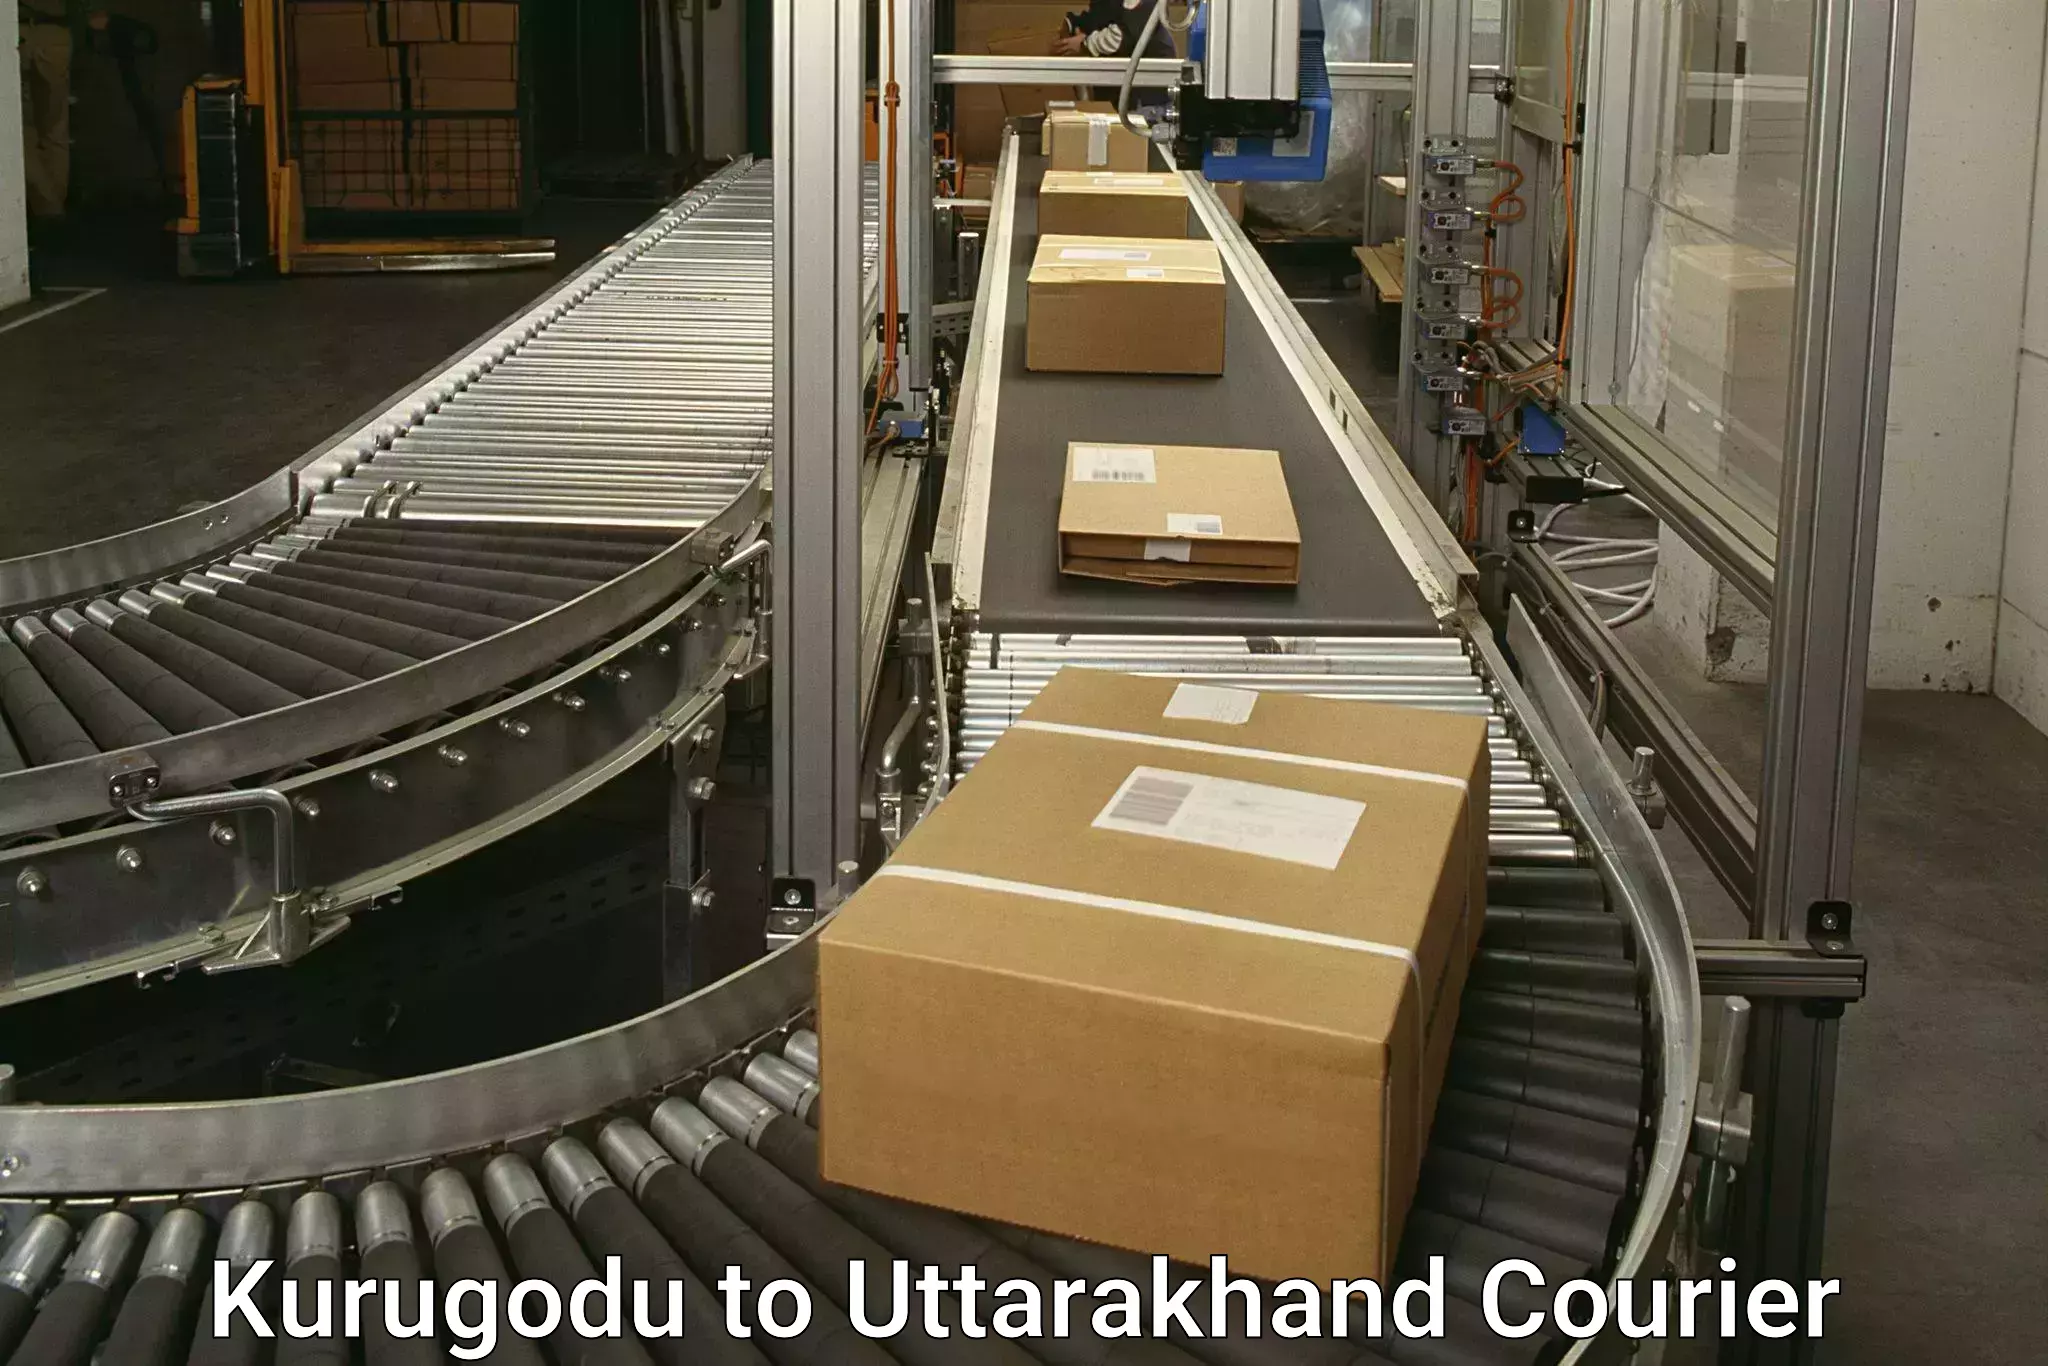 Customer-friendly courier services Kurugodu to Rishikesh